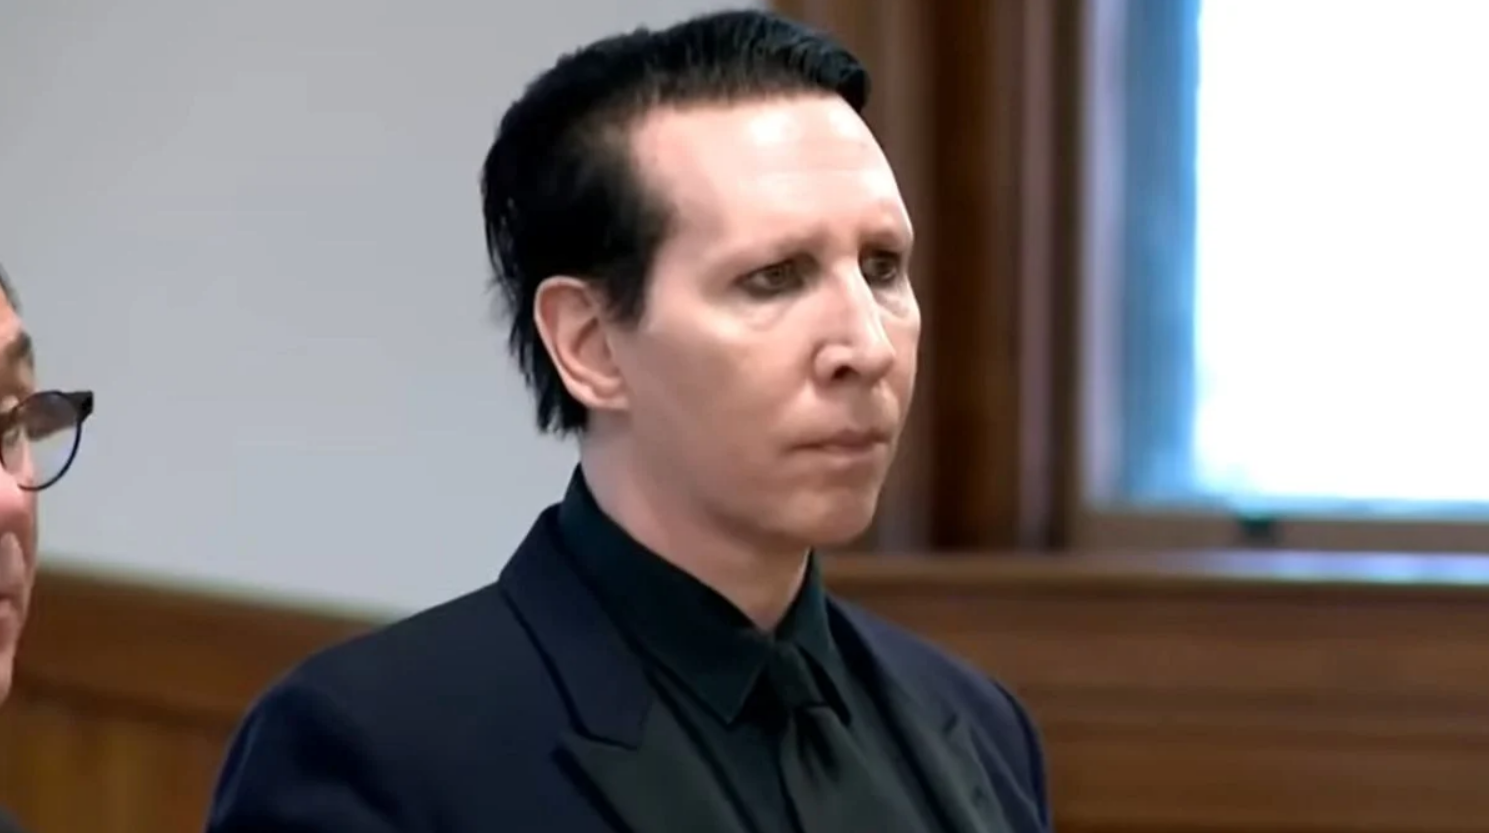 Marilyn Manson recebe sentença e multa por ter cuspido em fotógrafa em 2019